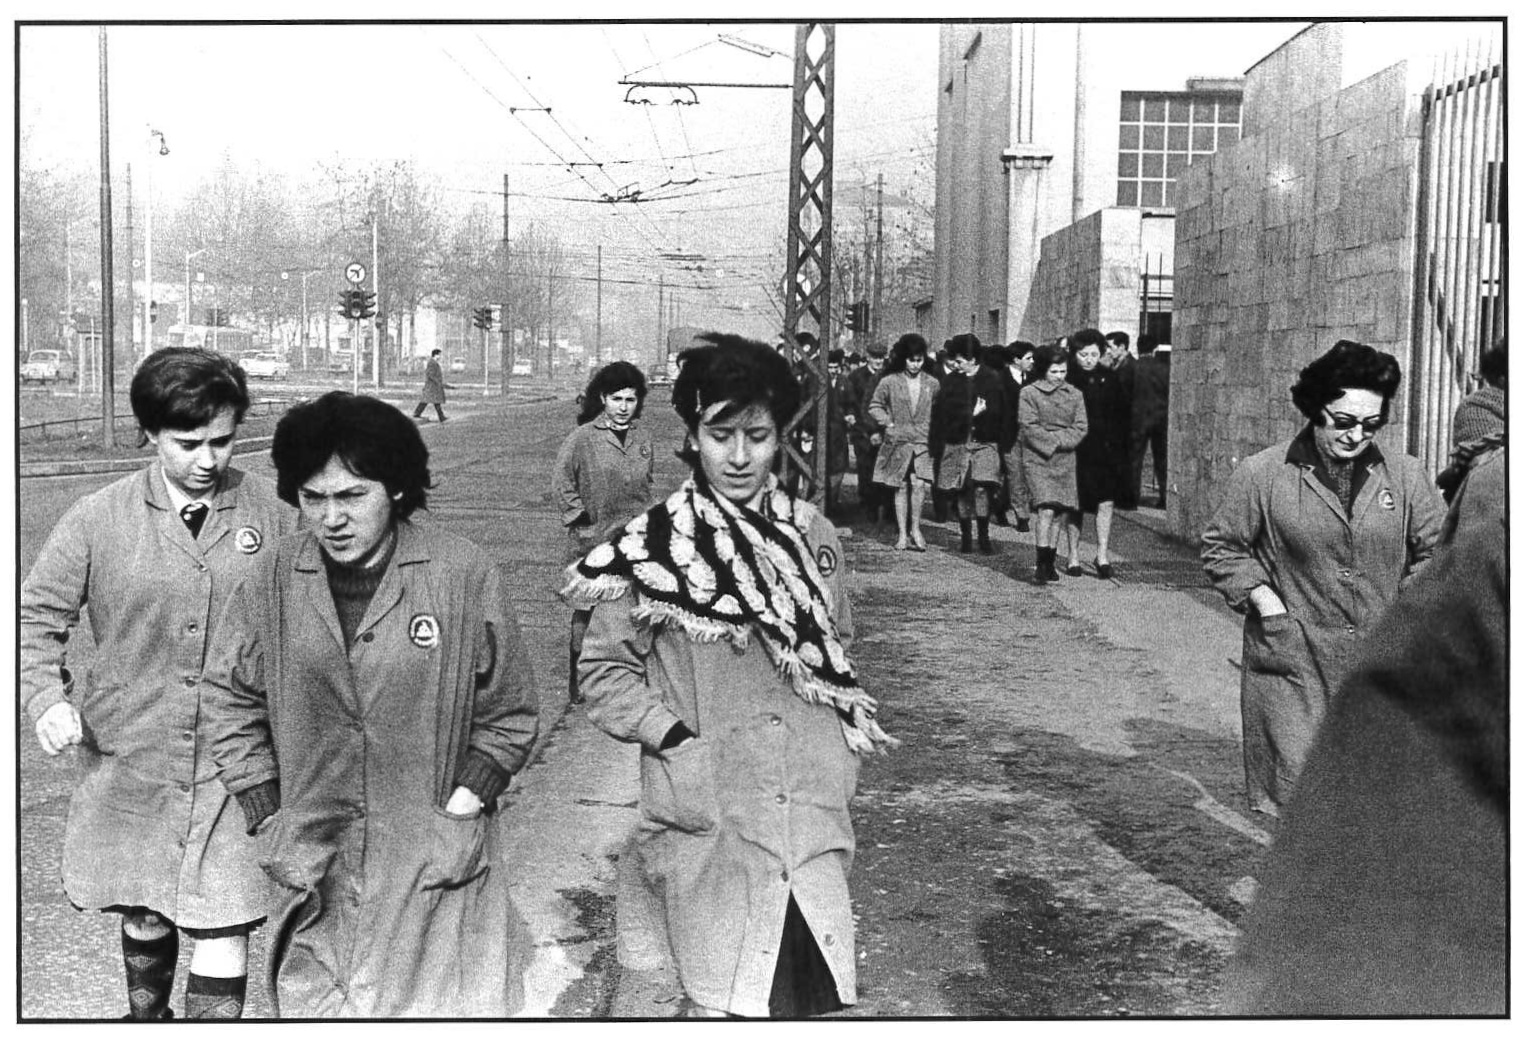   Viale Migliara, operaie della Simens in uscita verso la mensa. Milano, 1964.  